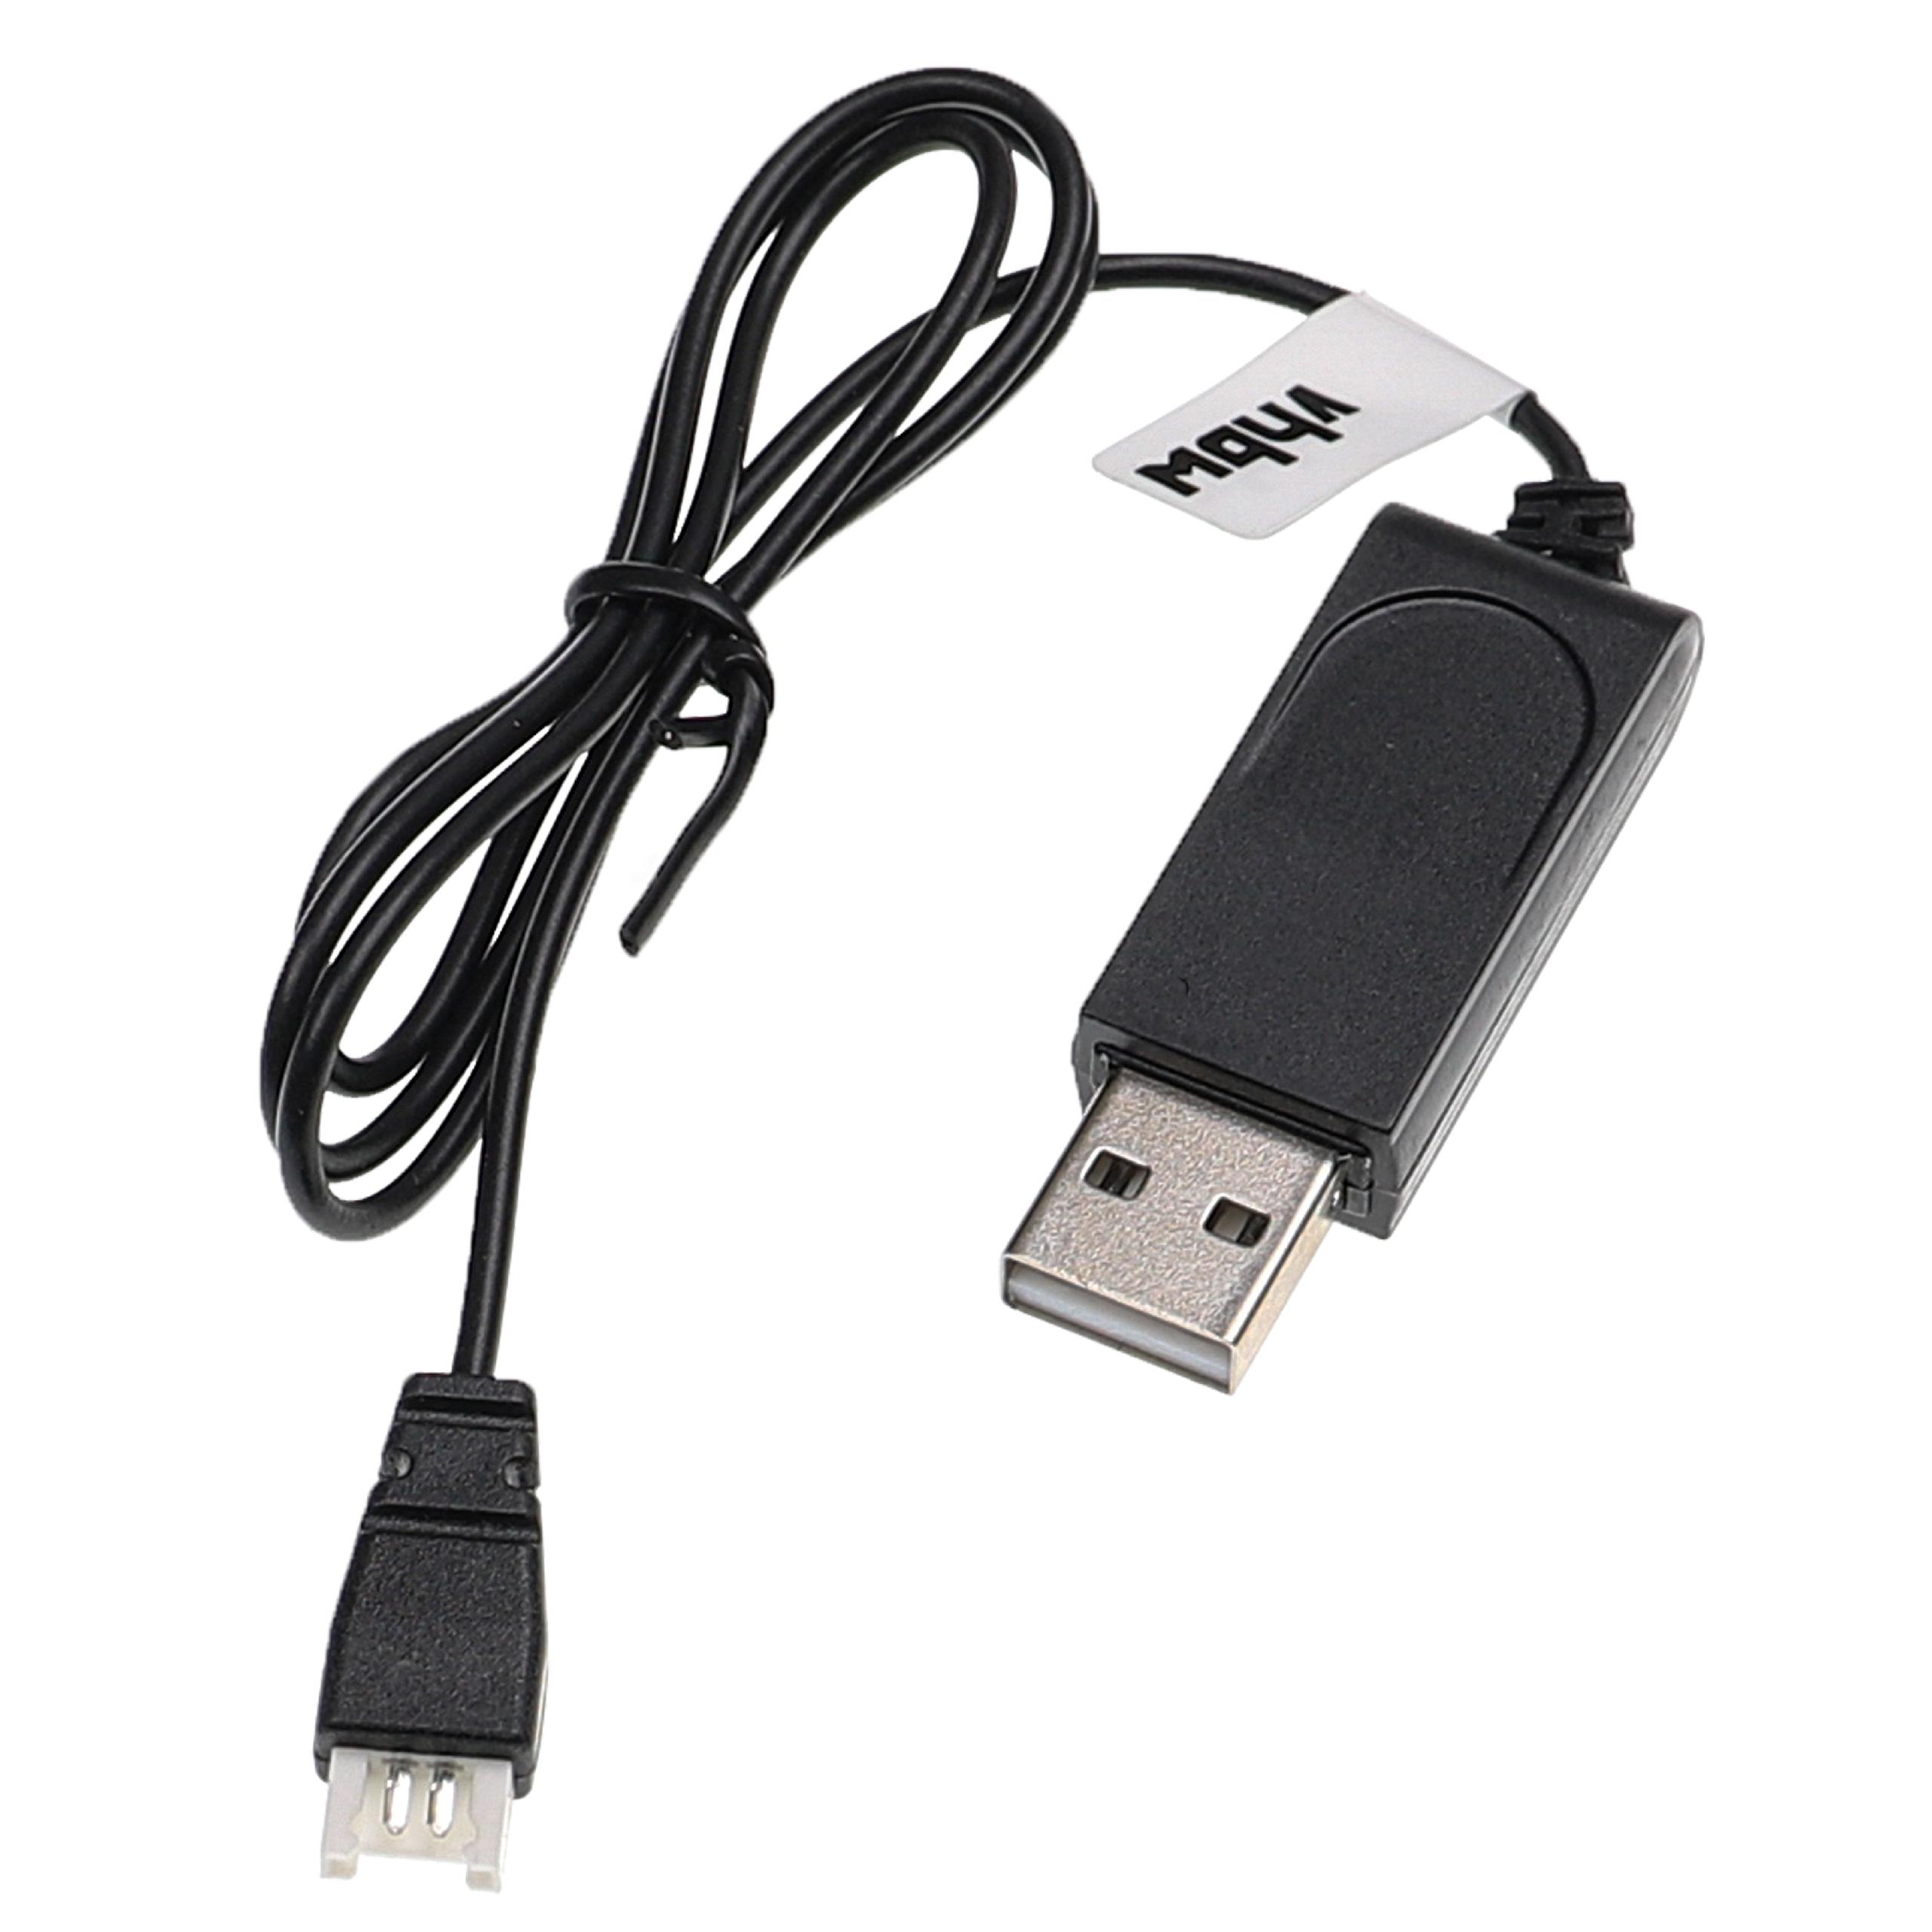 vhbw Cable de carga USB reemplaza Carrera 370410145 para con Carrera dron, cuadricóptero - 60 cm